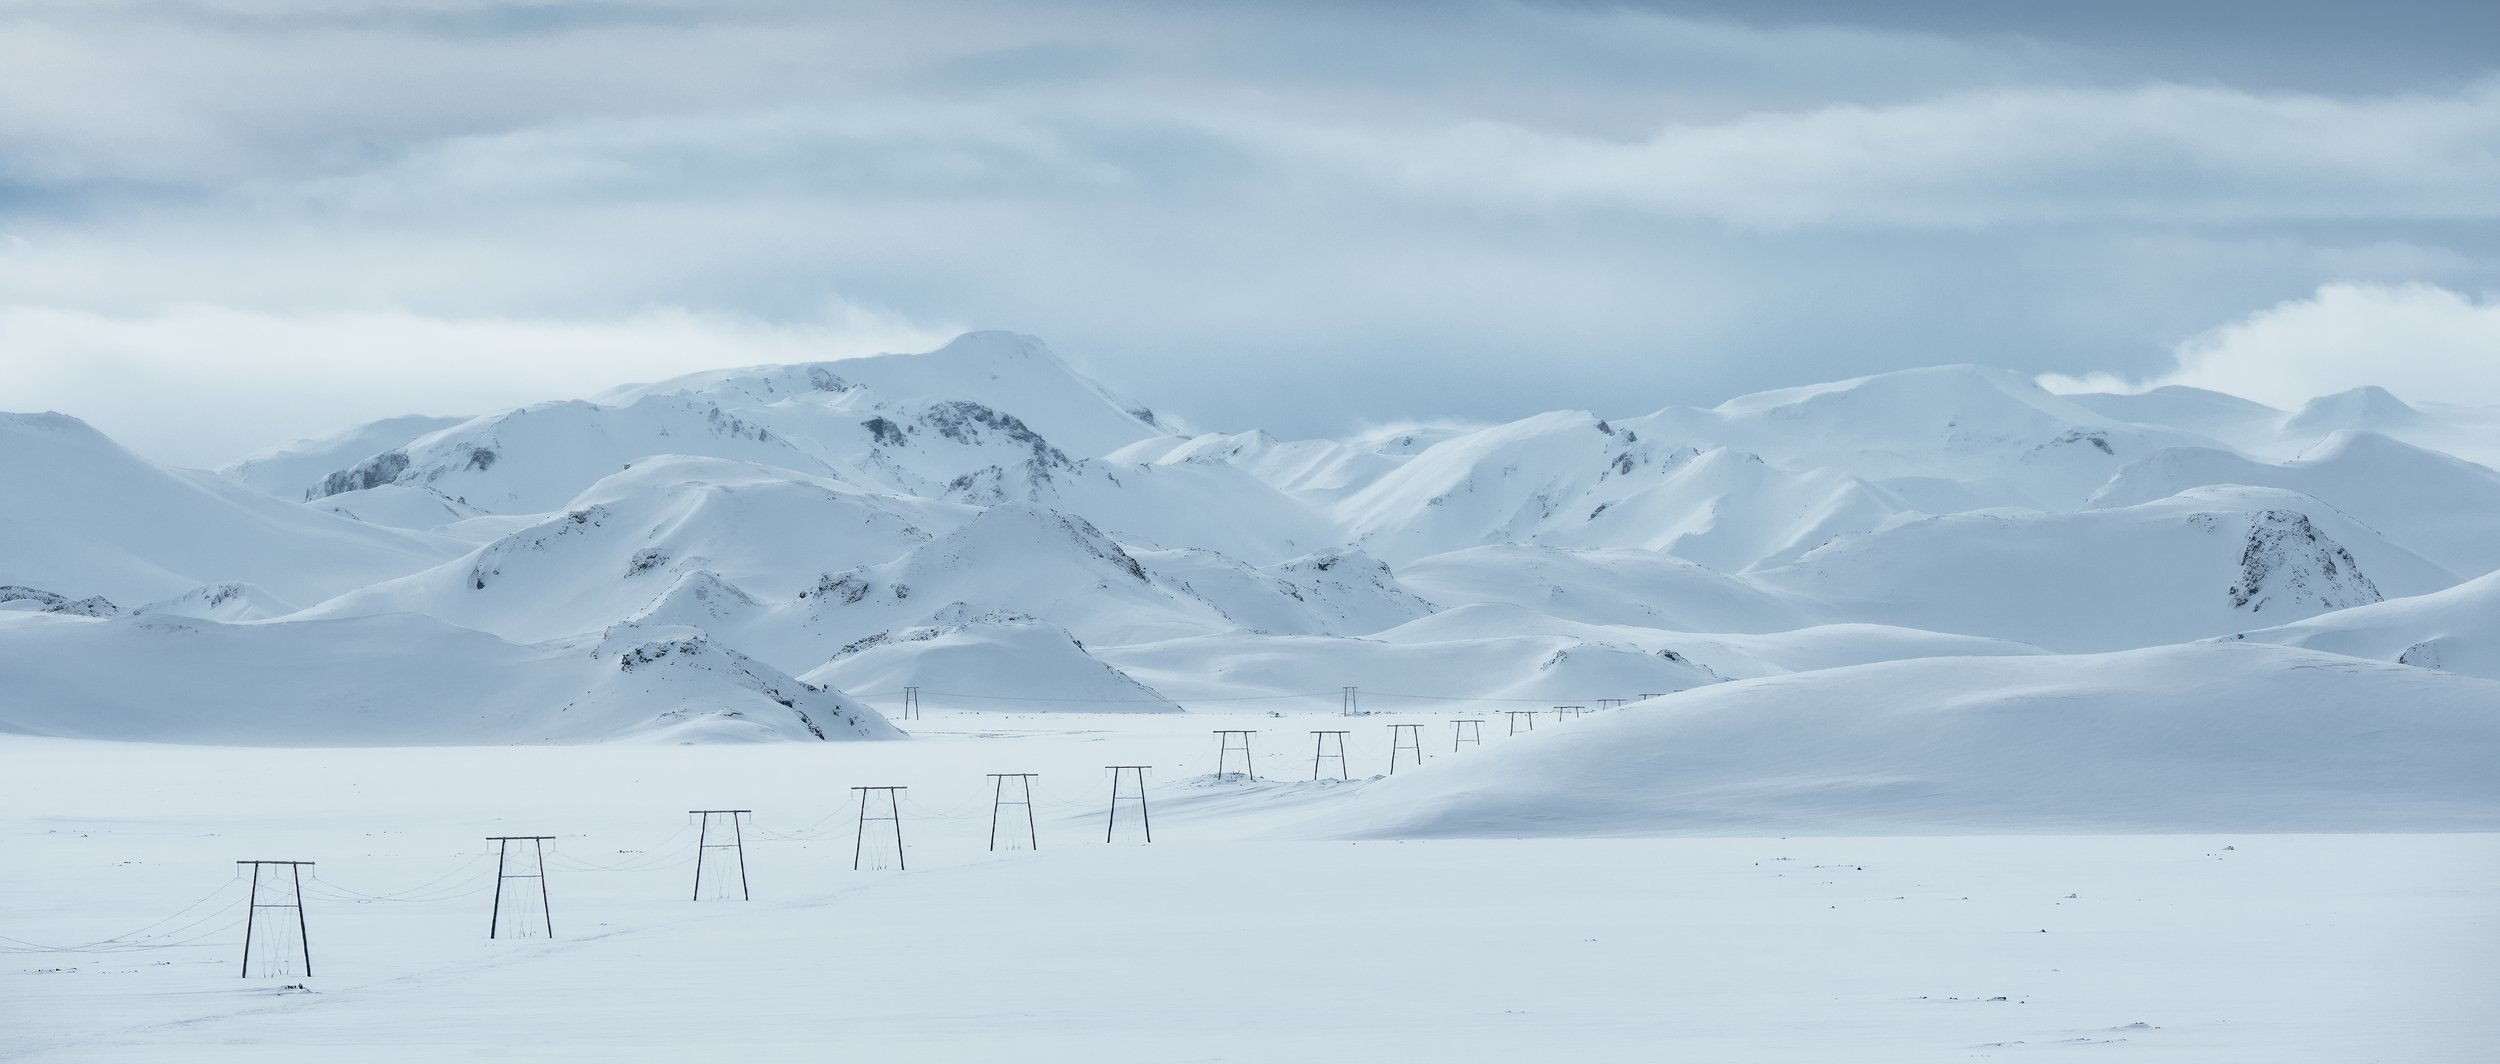 paisagem de inverno nas terras altas da islândia